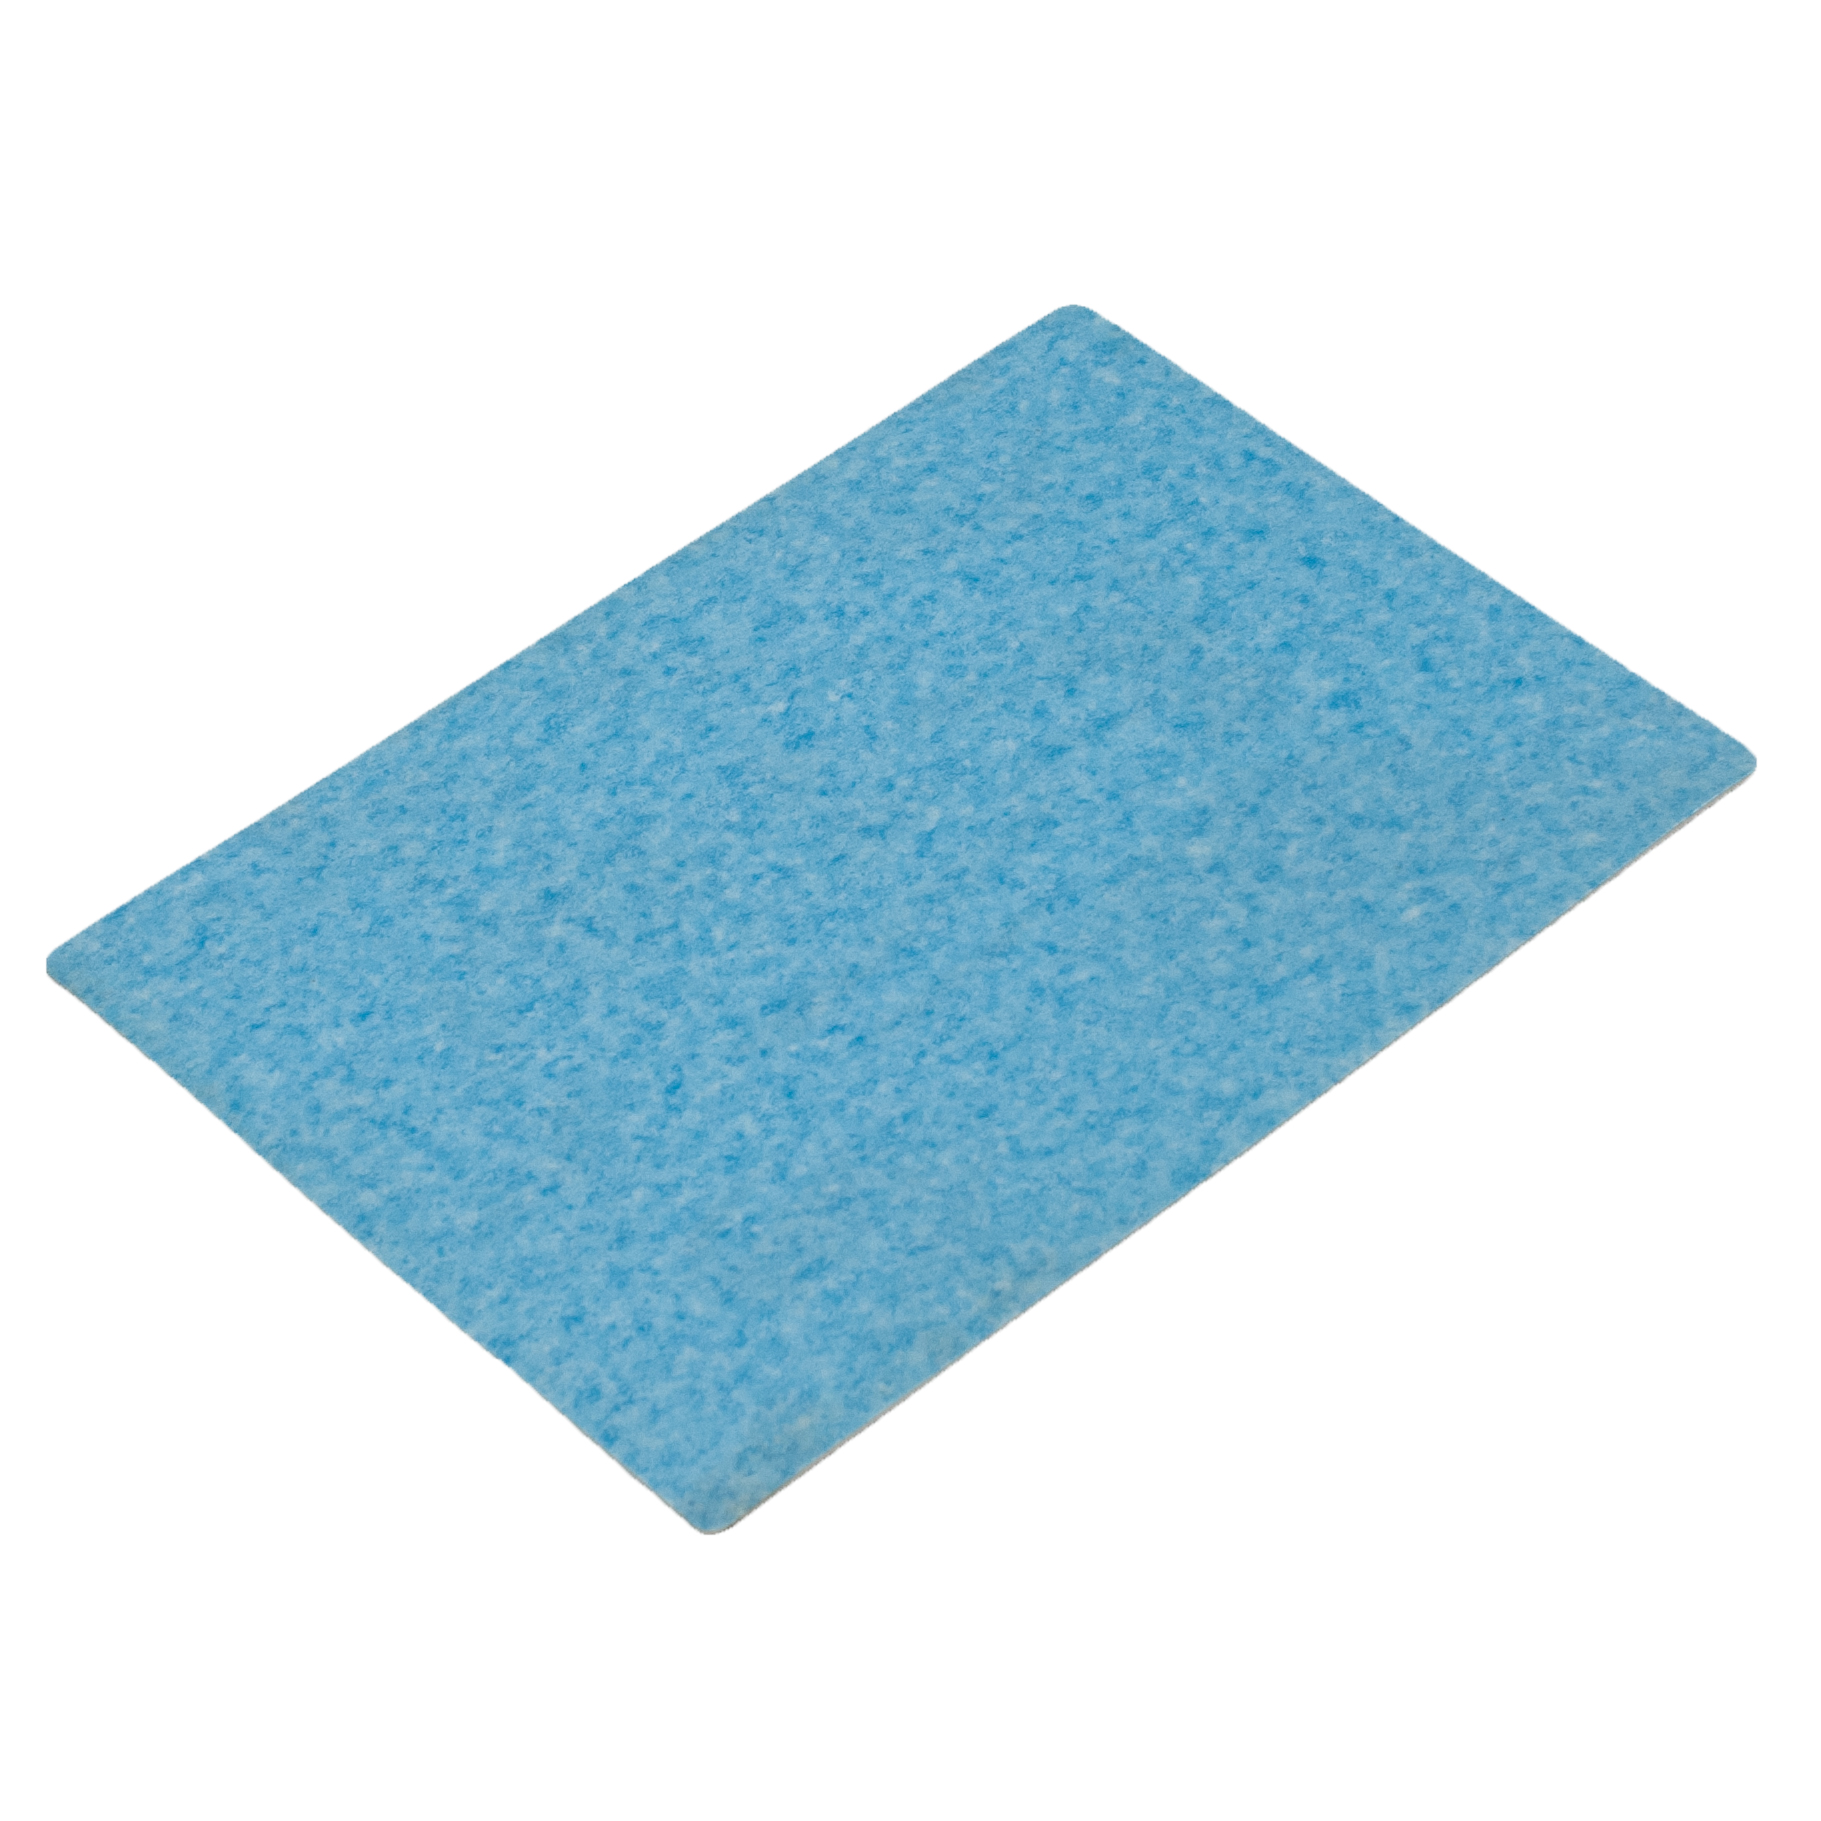 Flexible PVC Flooring For Basement Carpet